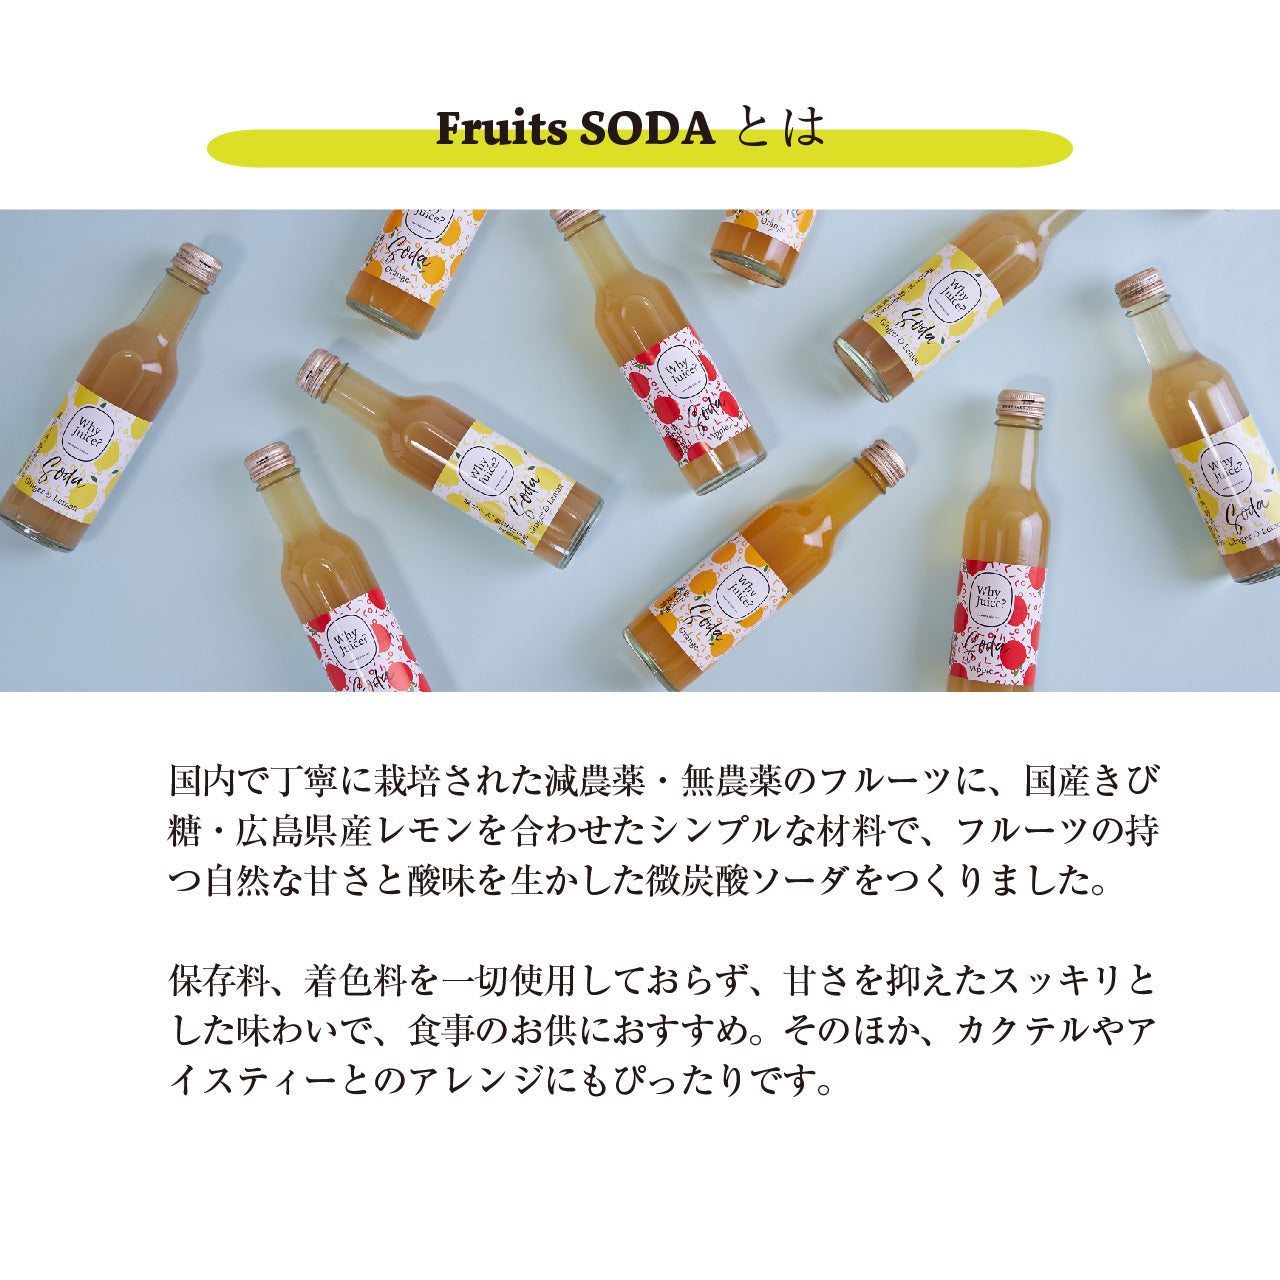 Fruits SODA 信州りんご (30本入)